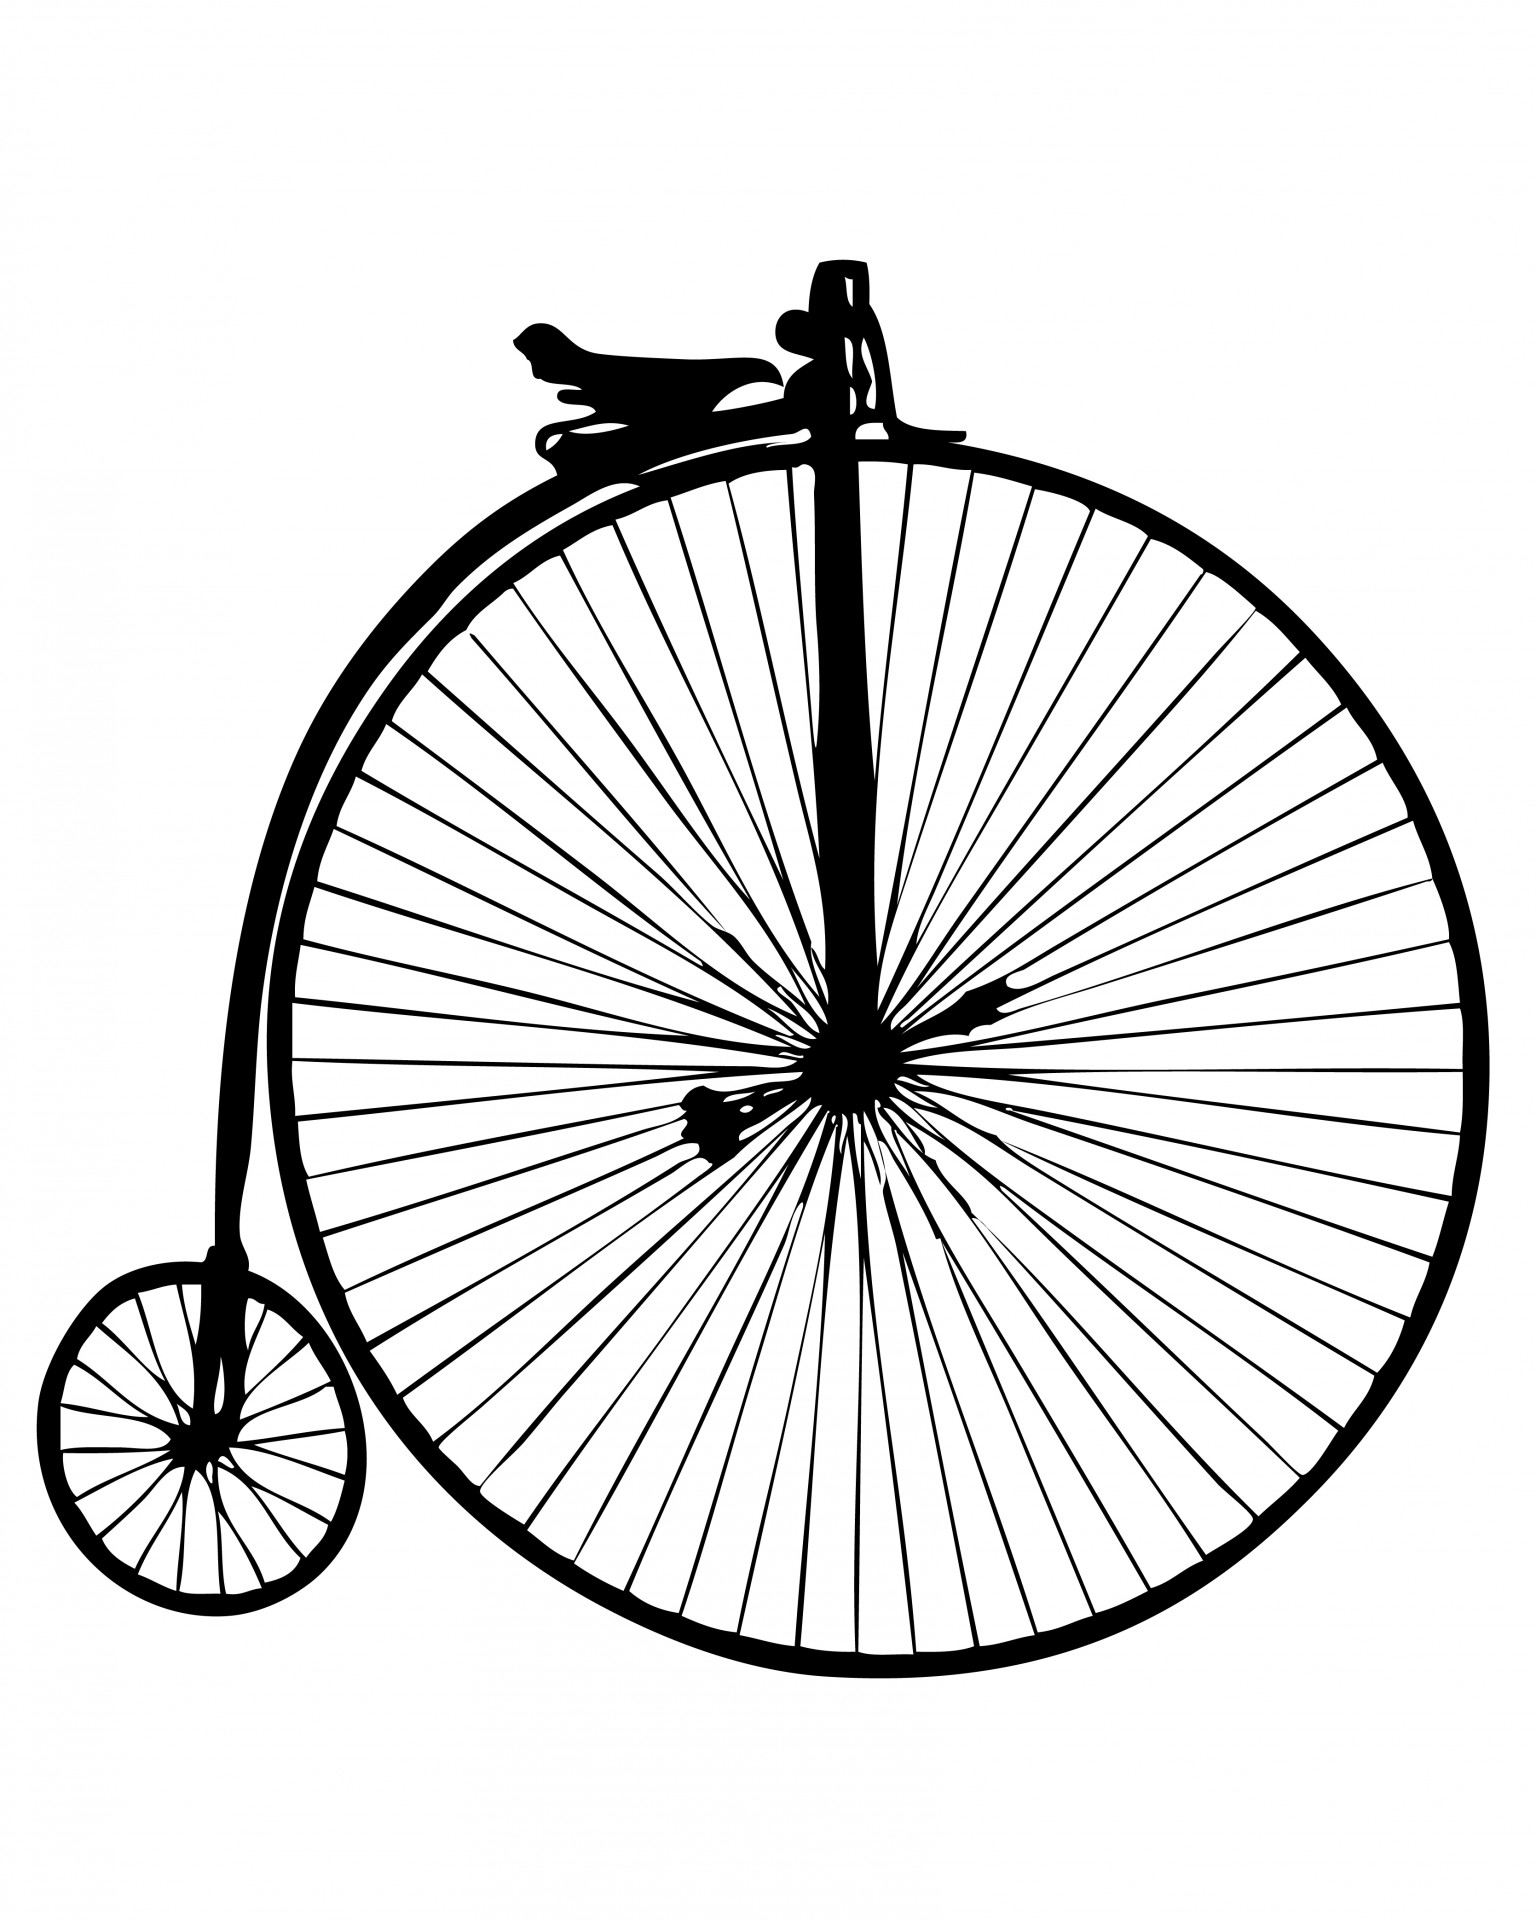 Колесо велосипед рисунок. Пенни фартинг. Велосипед пенни фартинг. Колесо со спицами. Старинный велосипед с большим колесом.